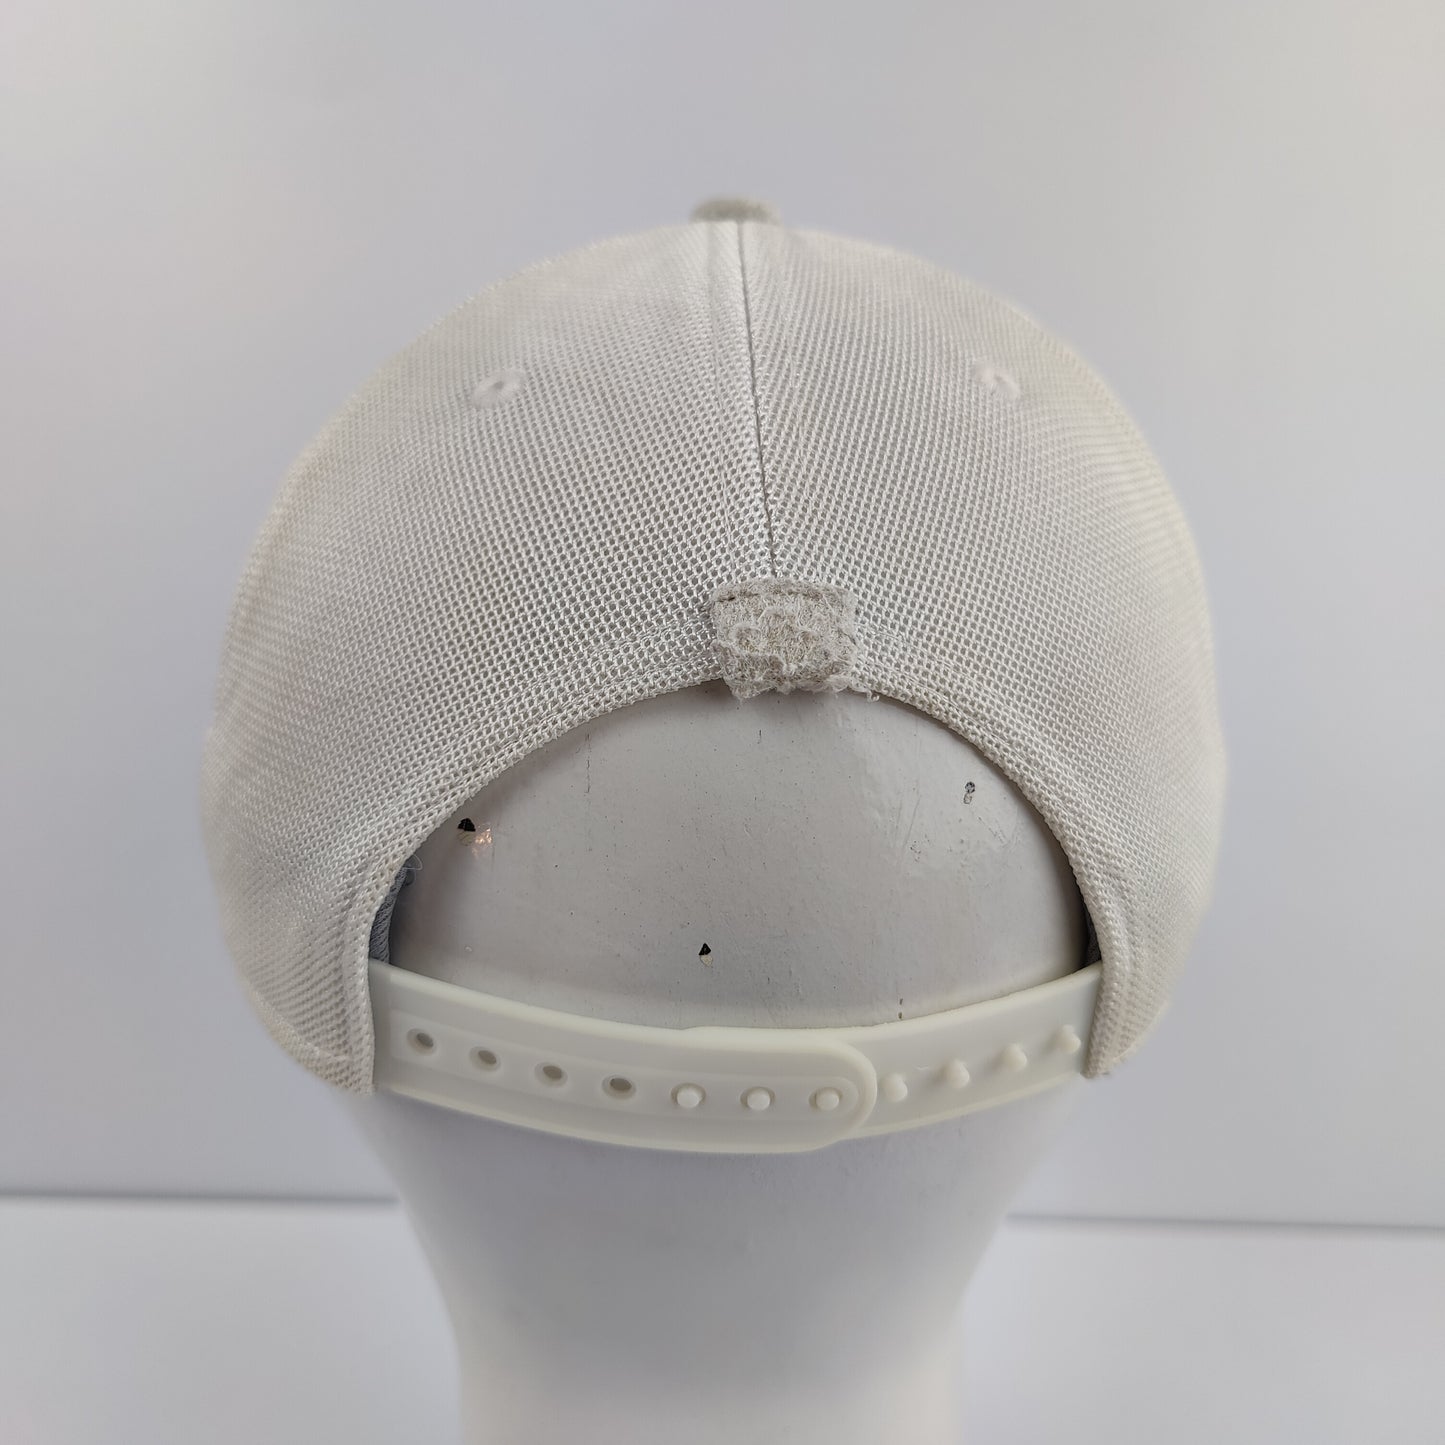 Adidas Male Cap - Grey - 1205